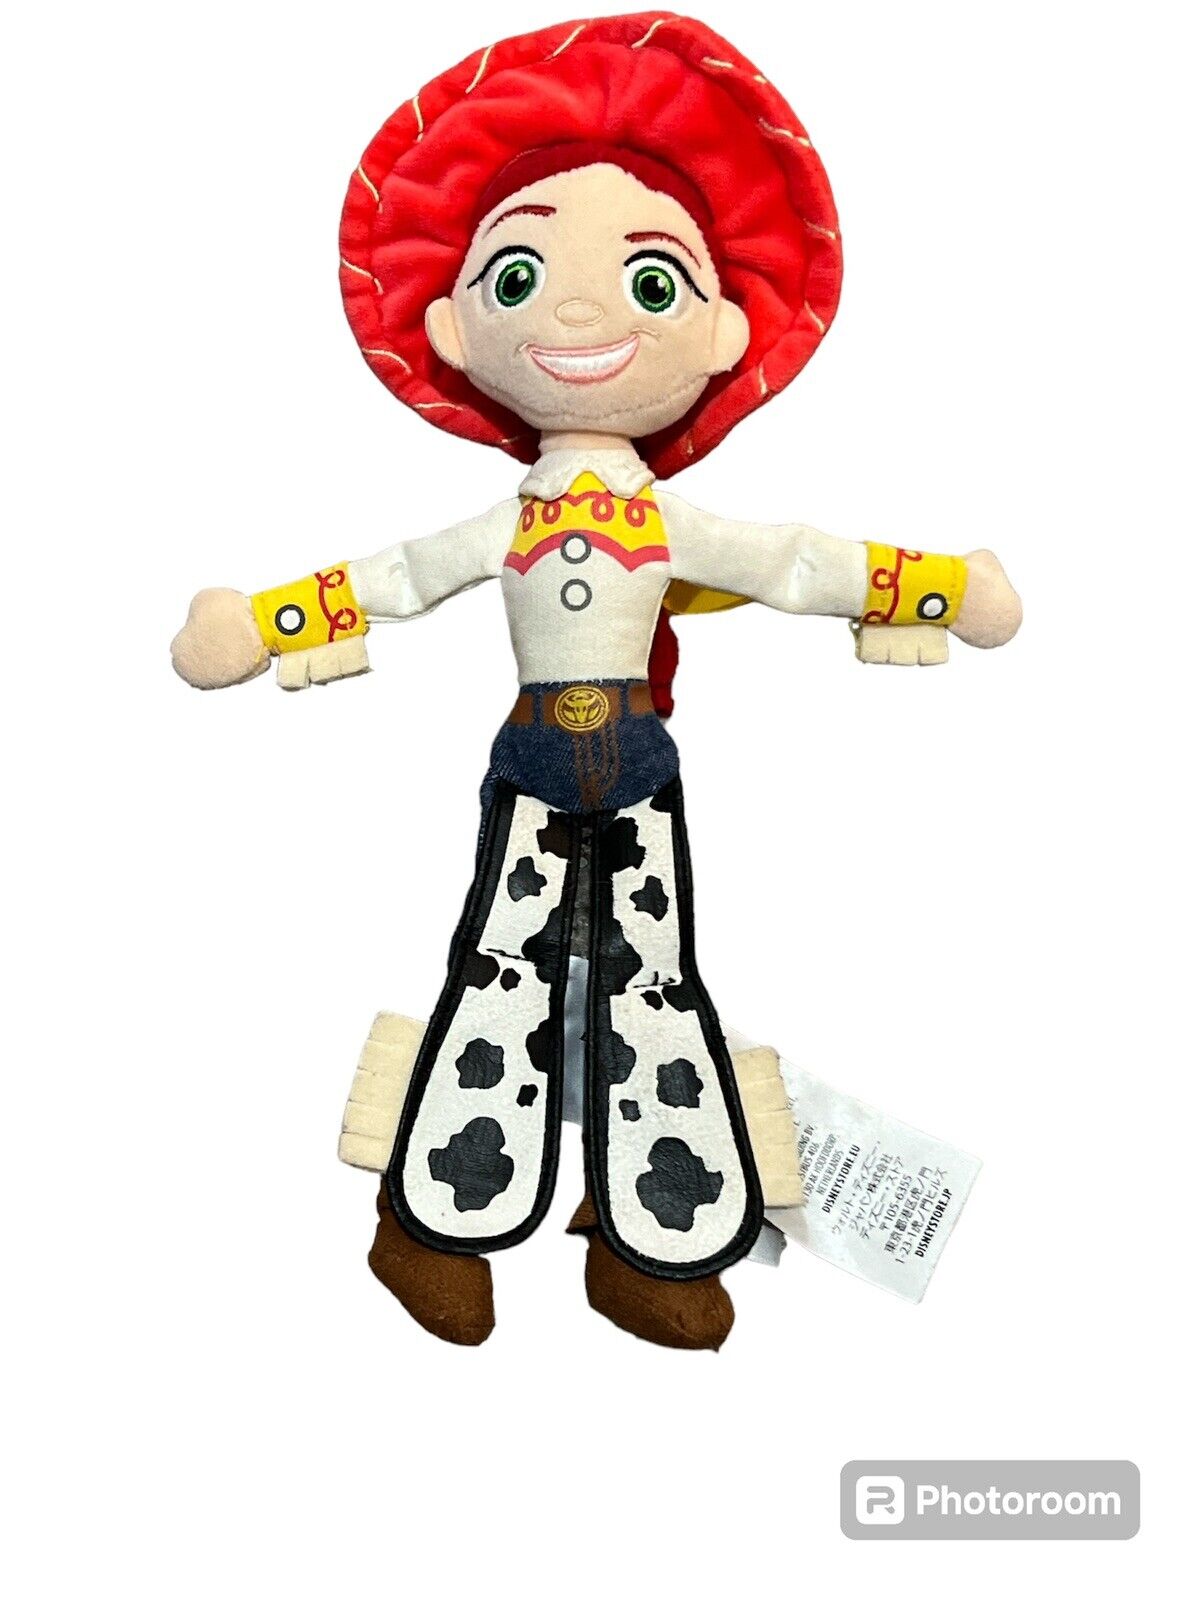 Disney Pixar Toy Story Jessie Mini Plush Stuffed Toy 11”